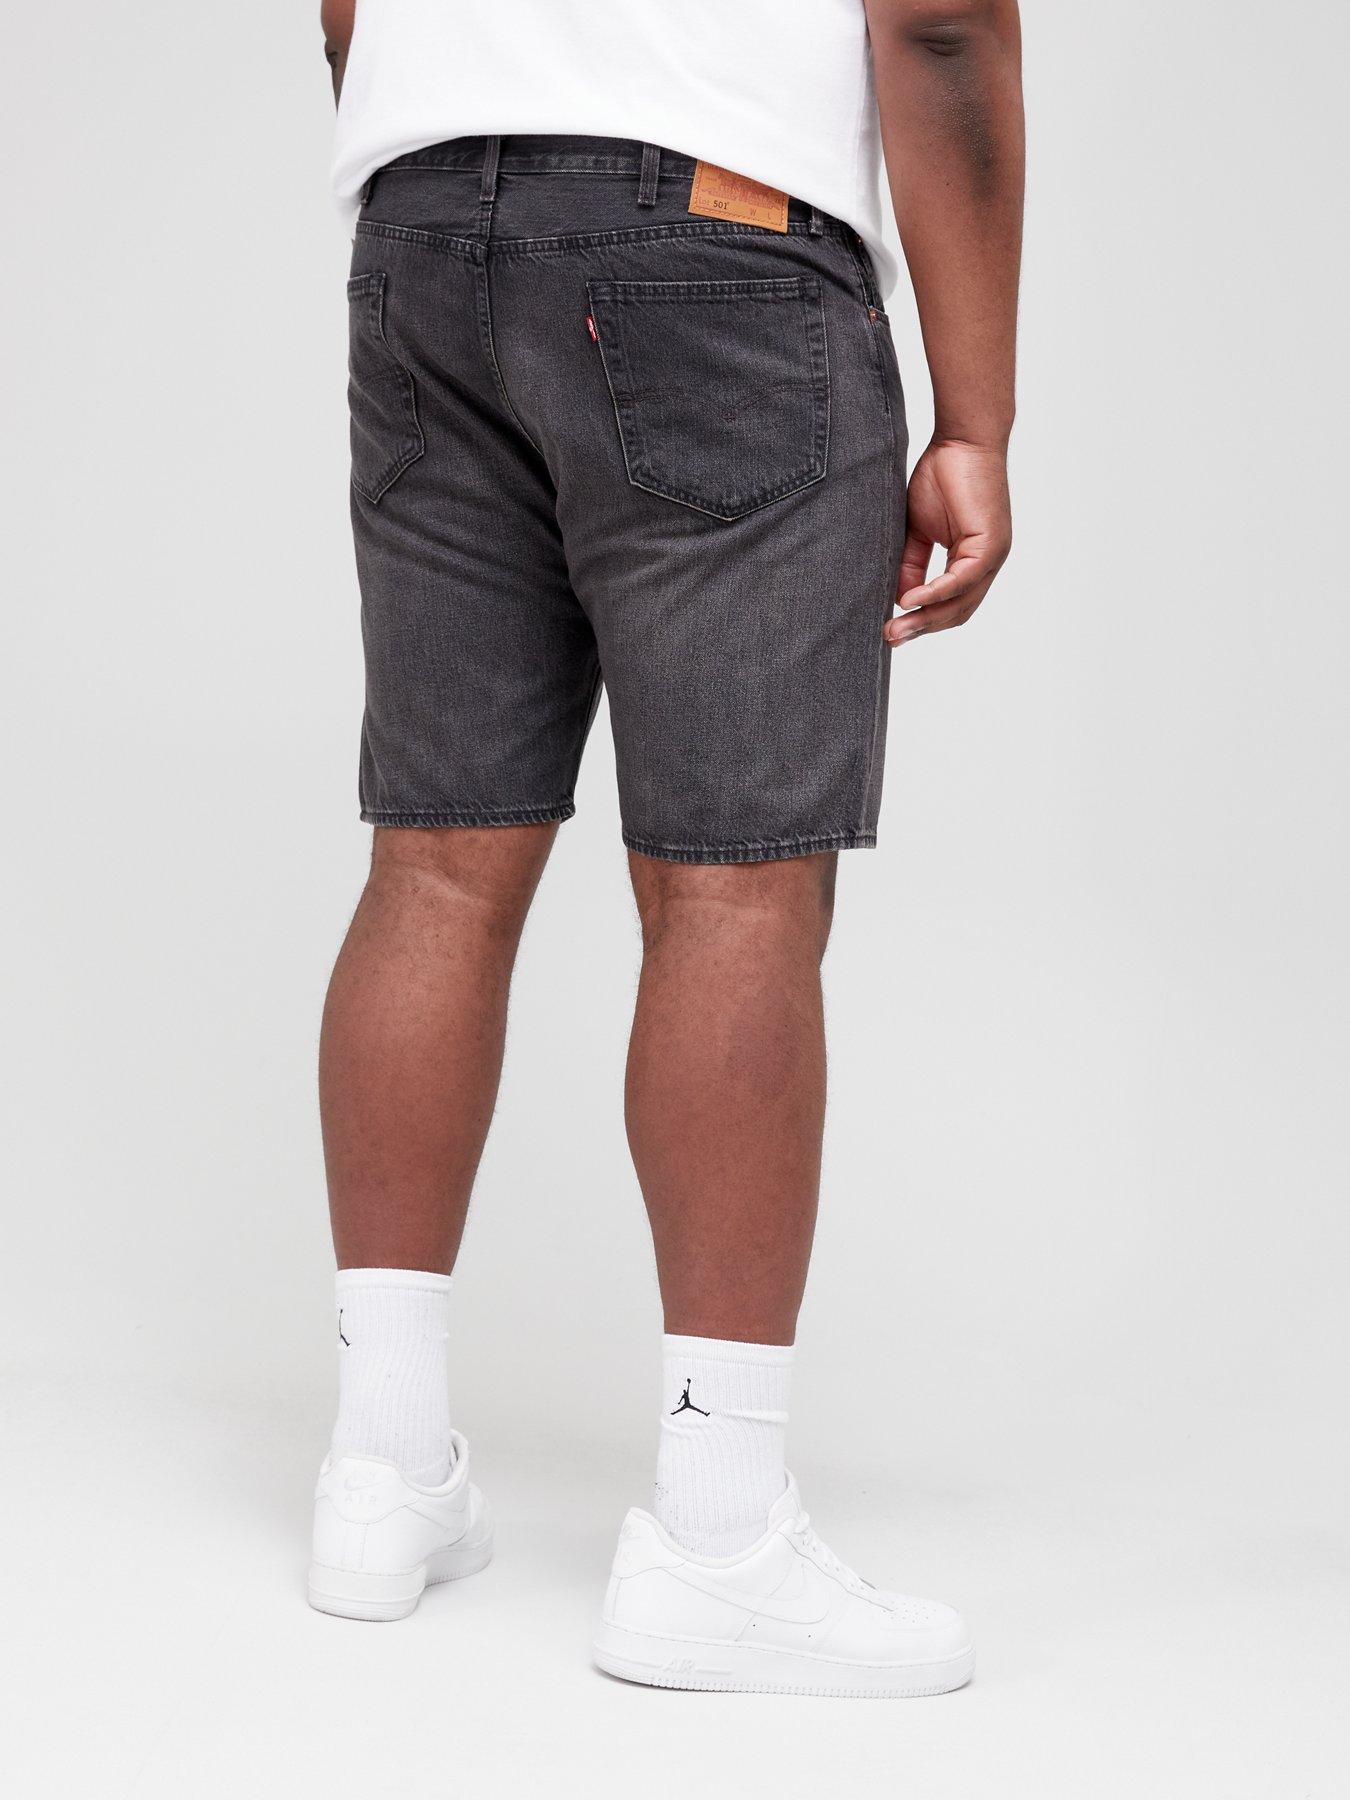 Levi's Big & Tall 501 Original Straight Fit Denim Shorts - Black Wash |  